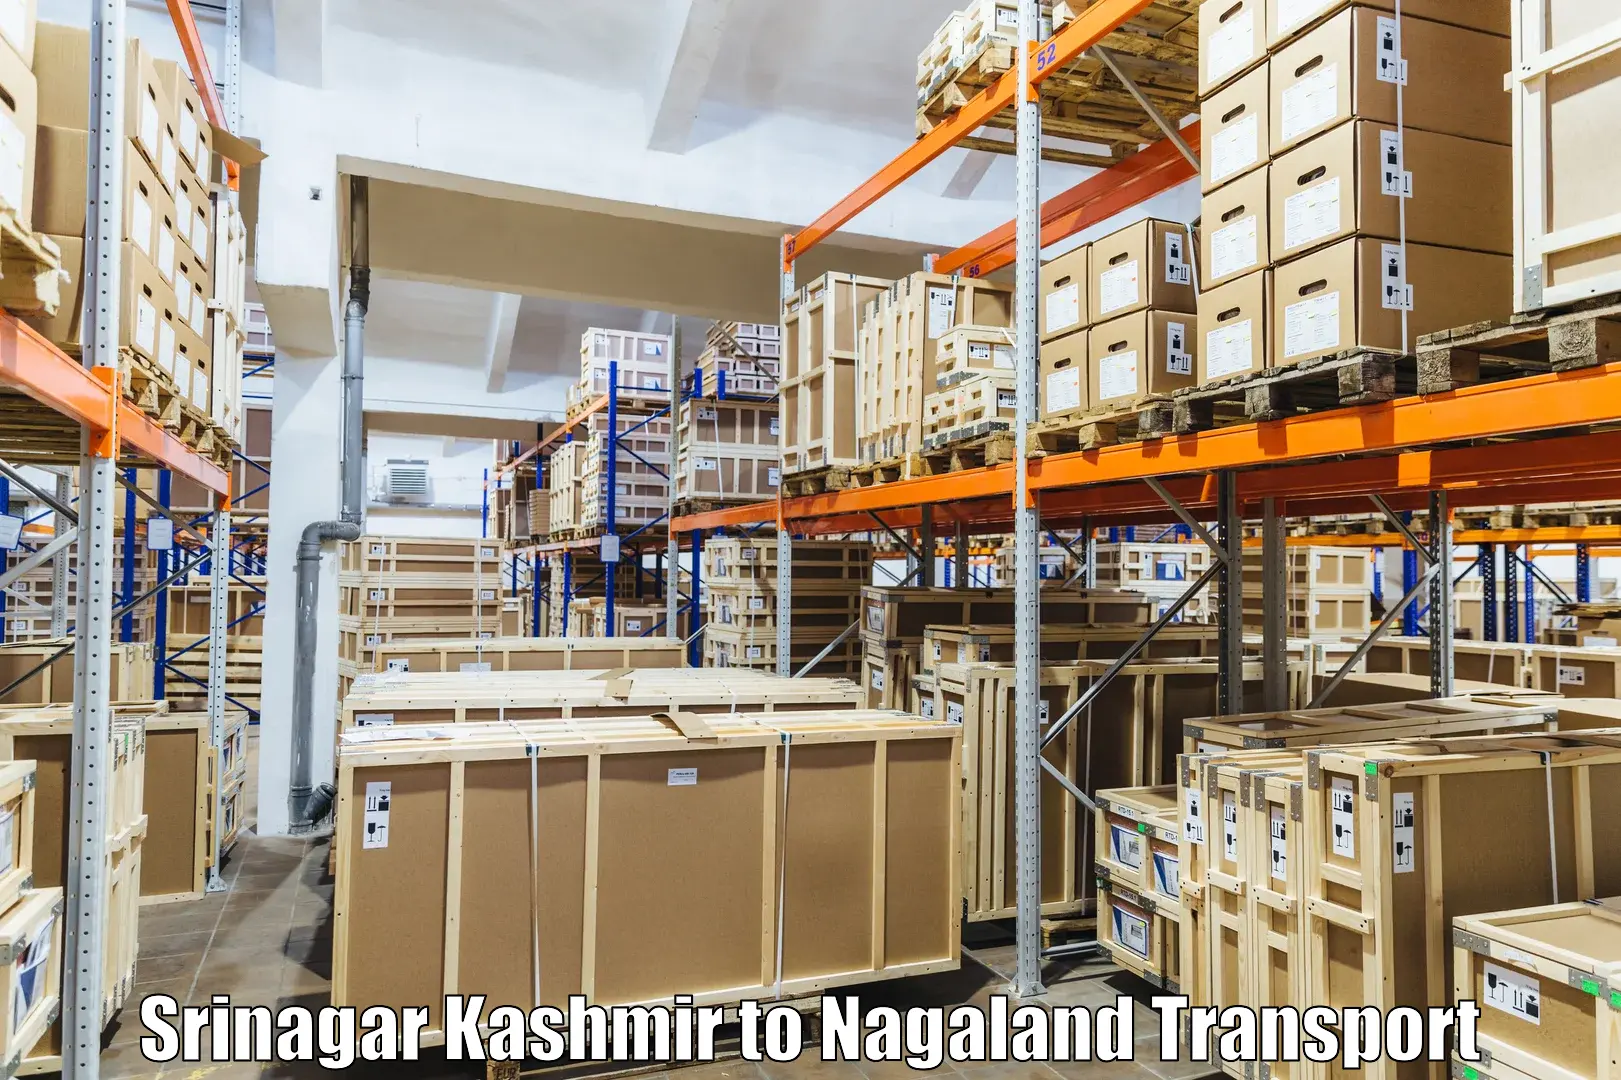 Delivery service Srinagar Kashmir to NIT Nagaland